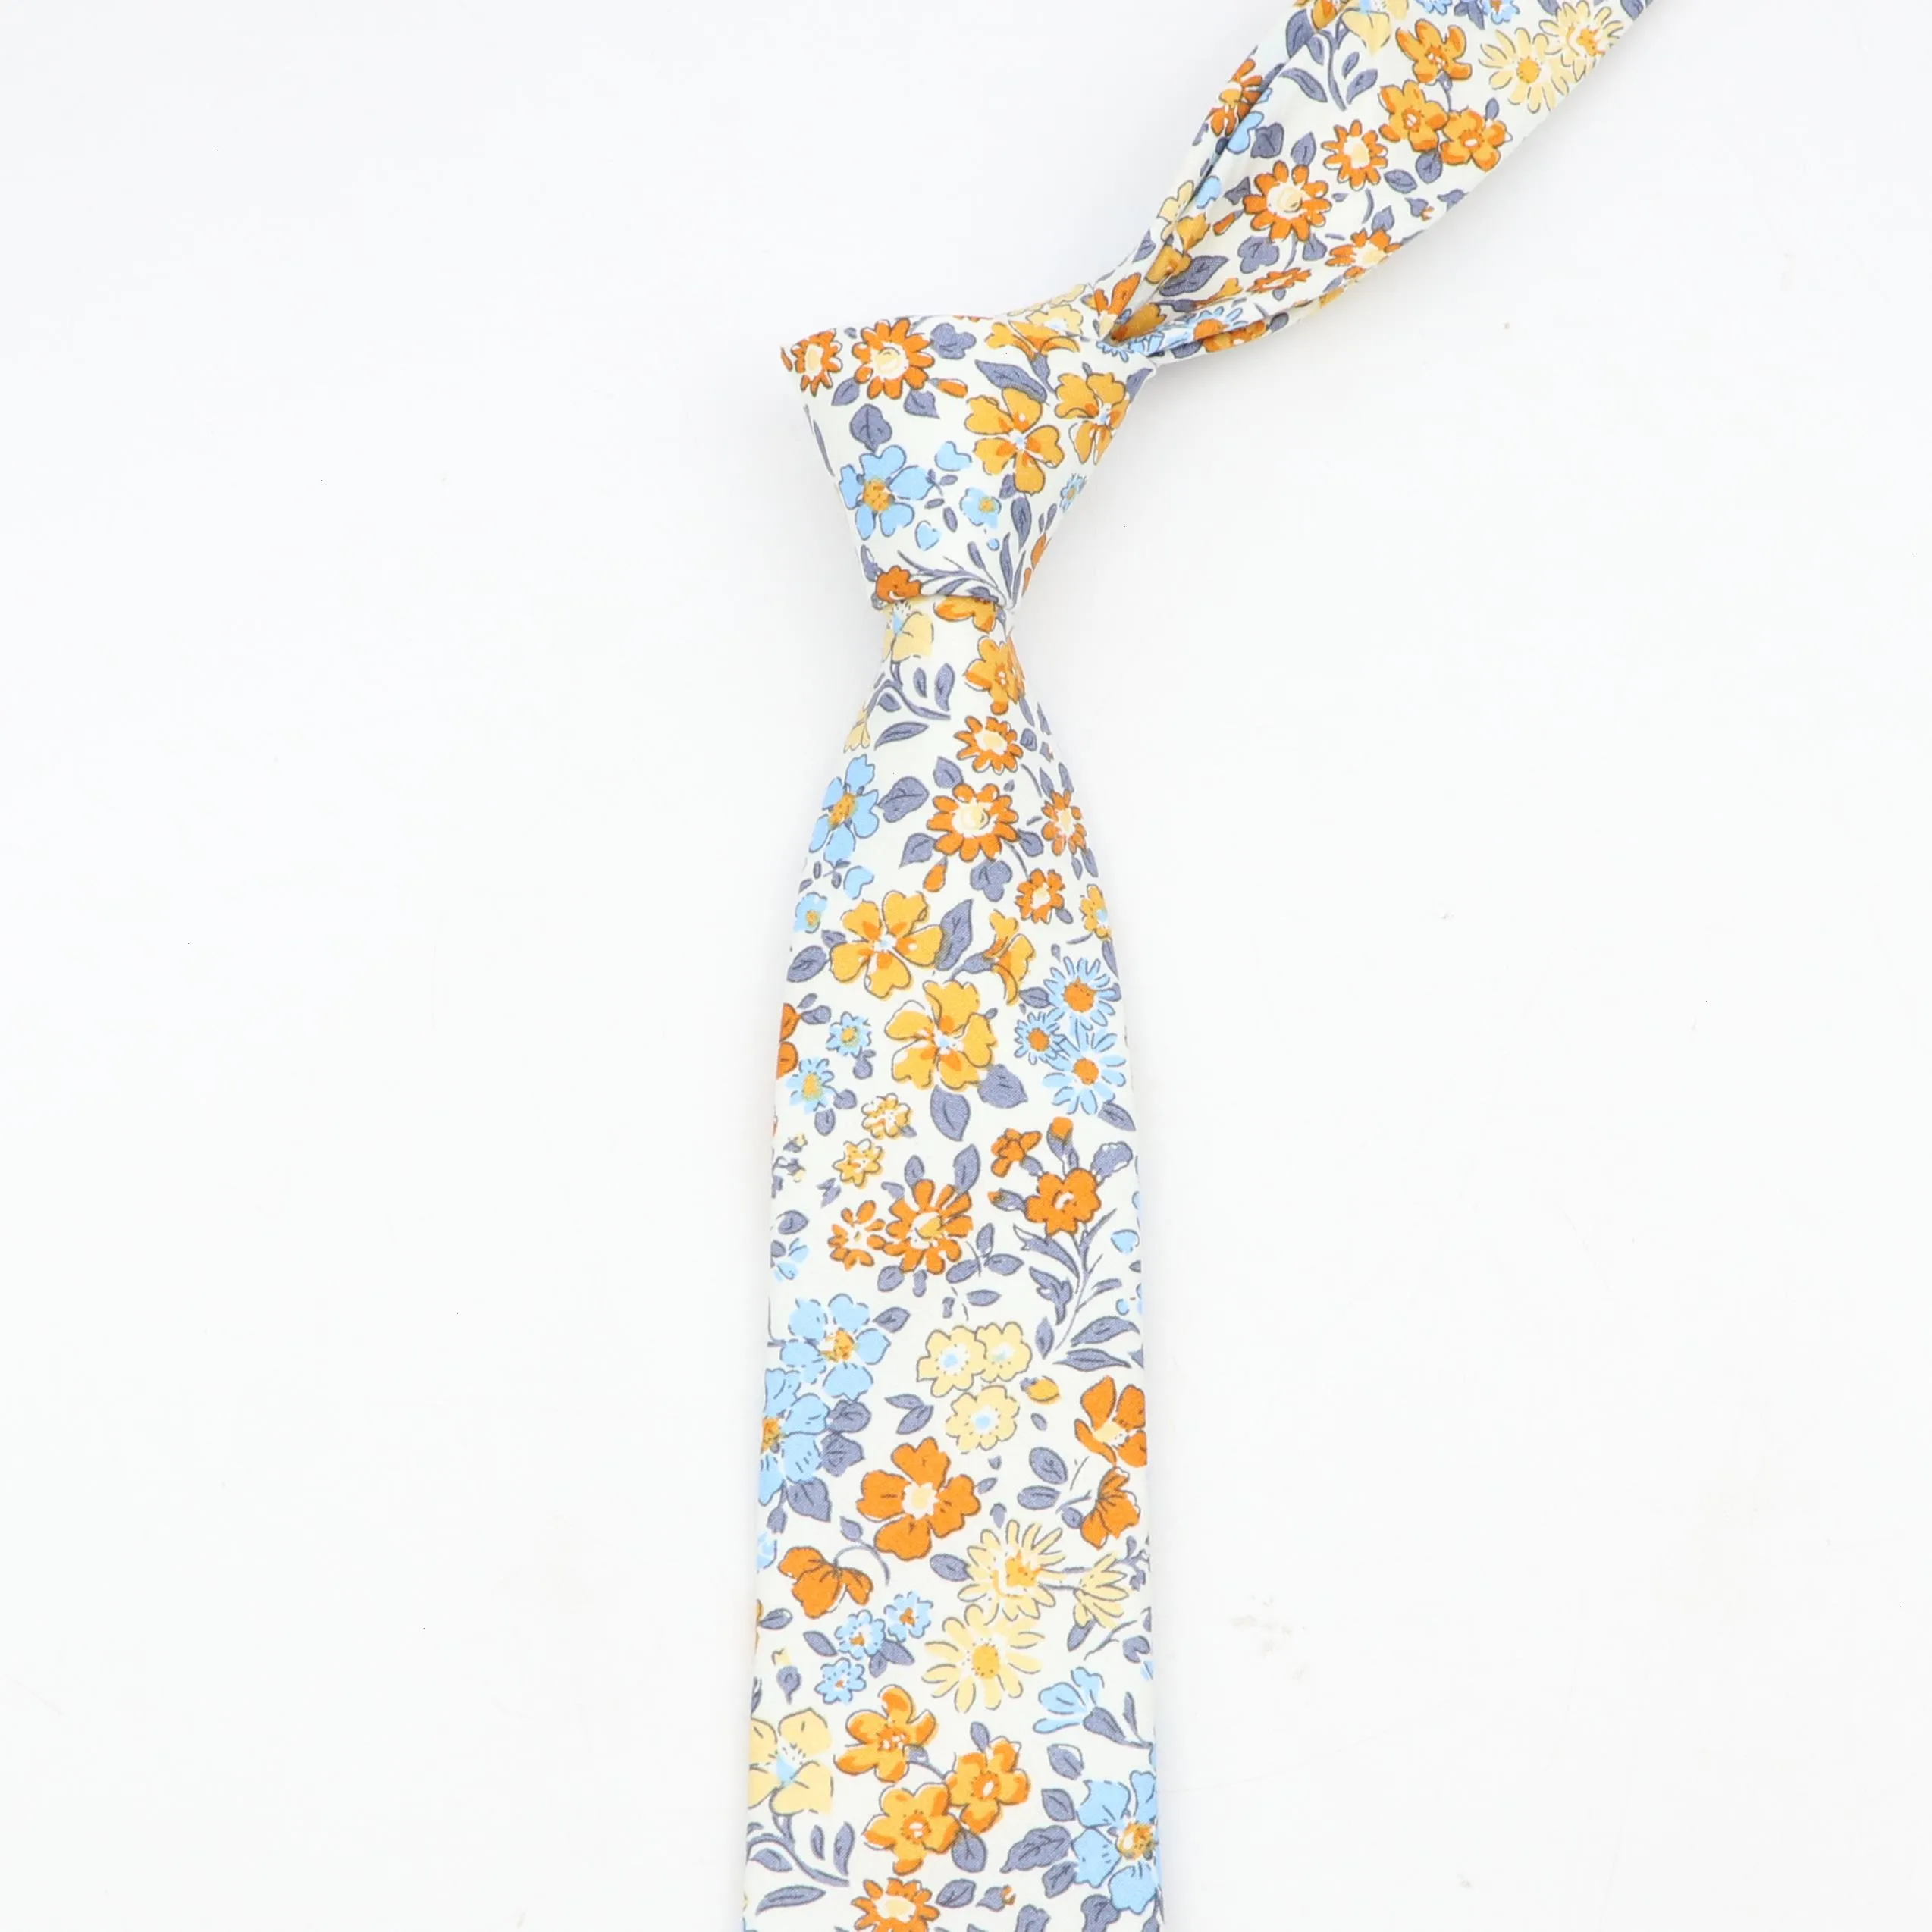 Cravatta per uomo Collo in cotone skinny floreale Abiti casual Cravatte eleganti Cravatte classiche con stampa floreale Accessori da sposa